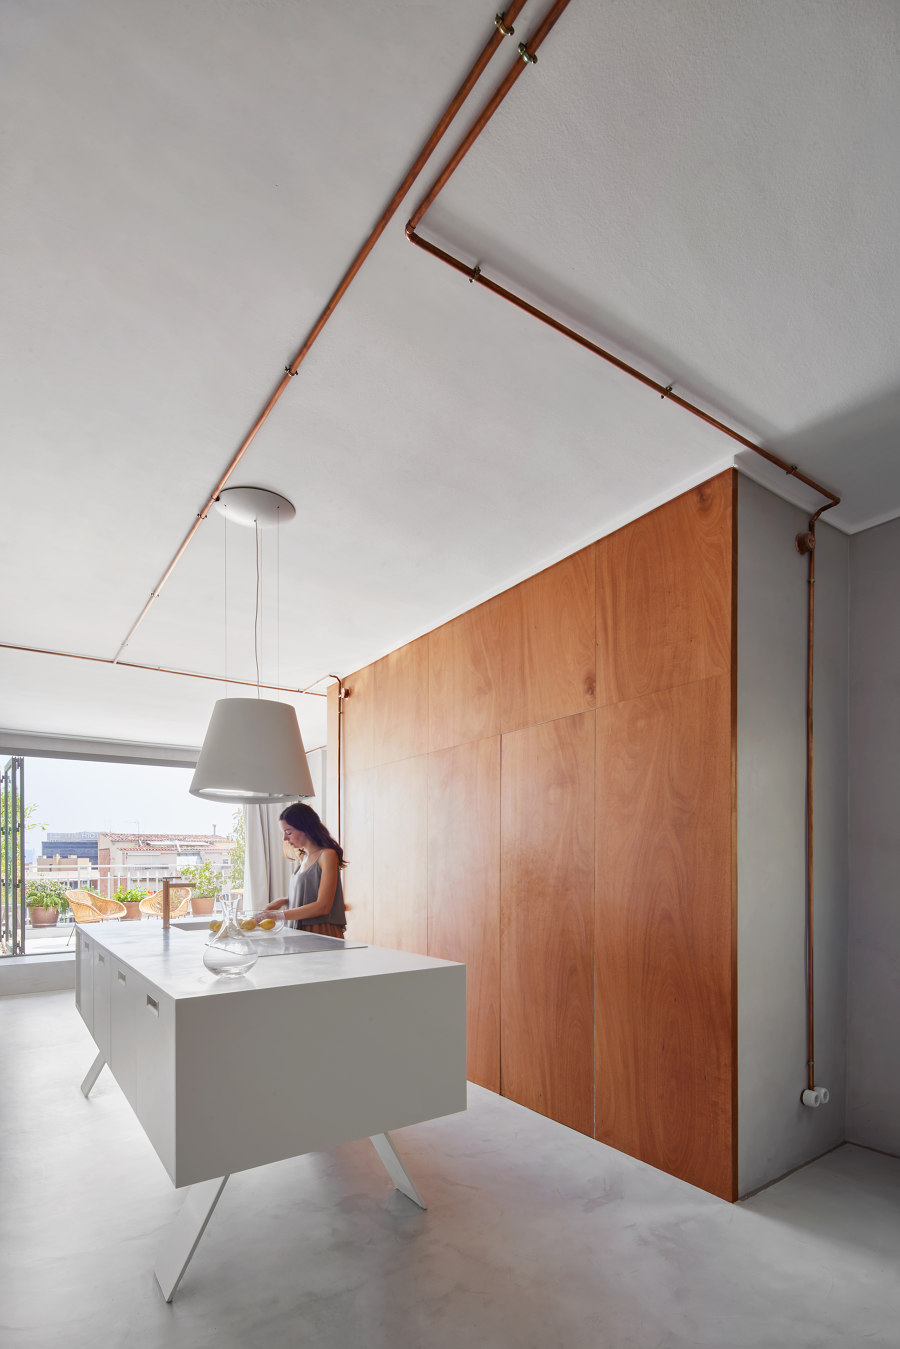 Marina Apartment de Cometa Architects | Espacios habitables